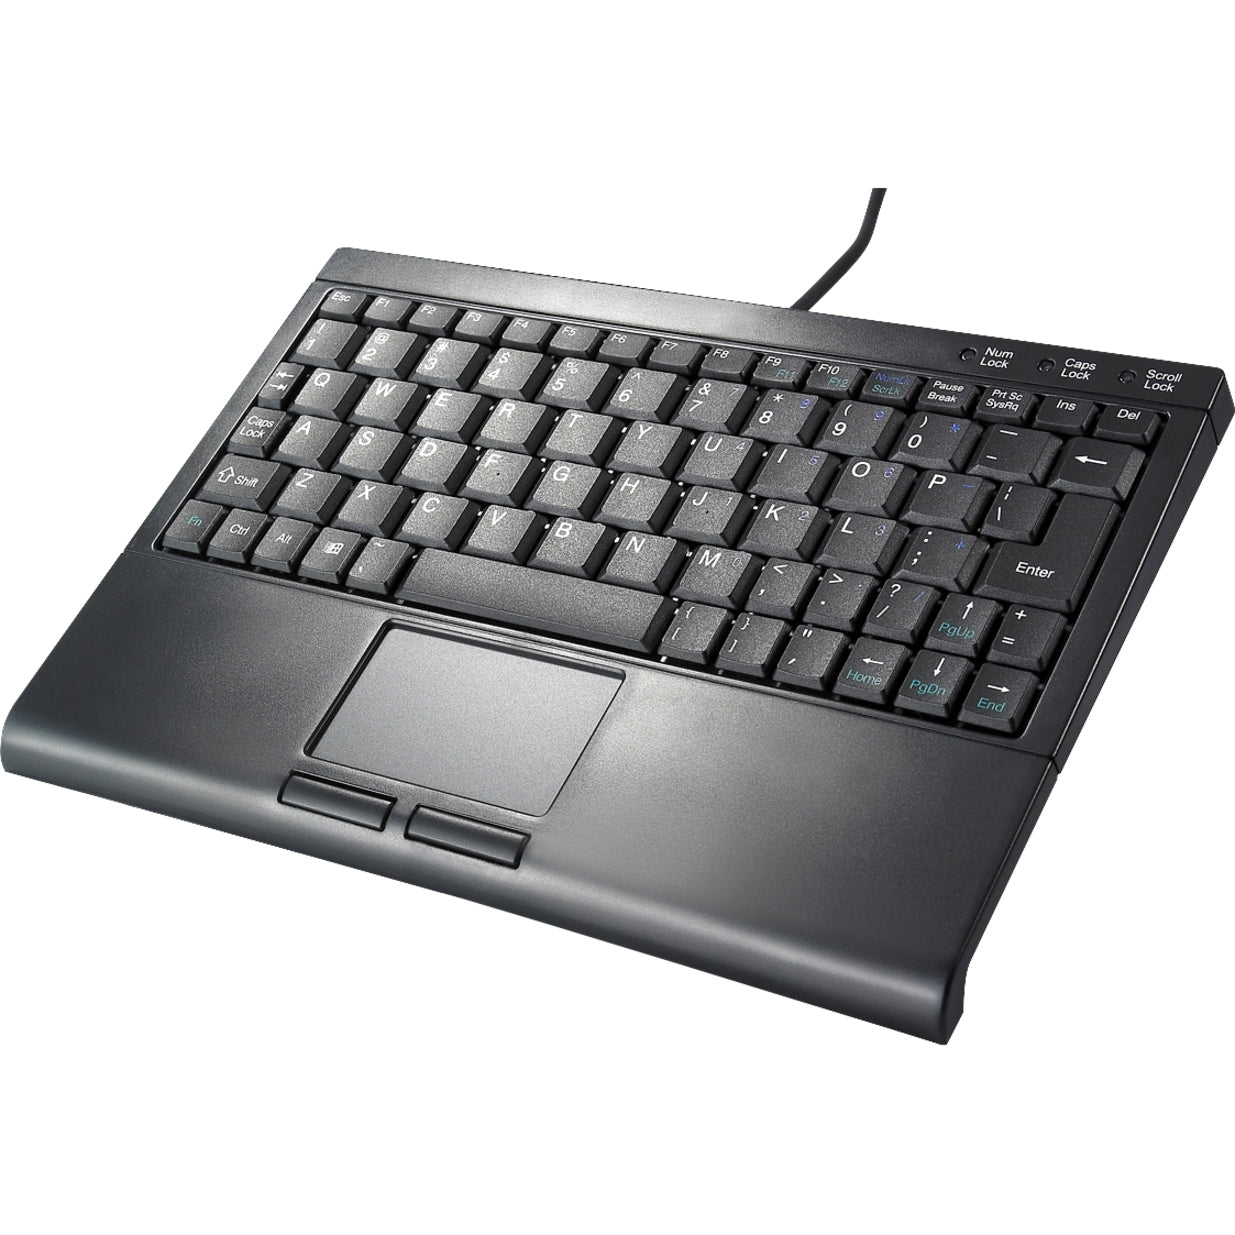 Solidtek KB-3410BU USB Super Mini Keyboard 77 Keys with Touchpad Mouse, Quiet Keys, Slim Design